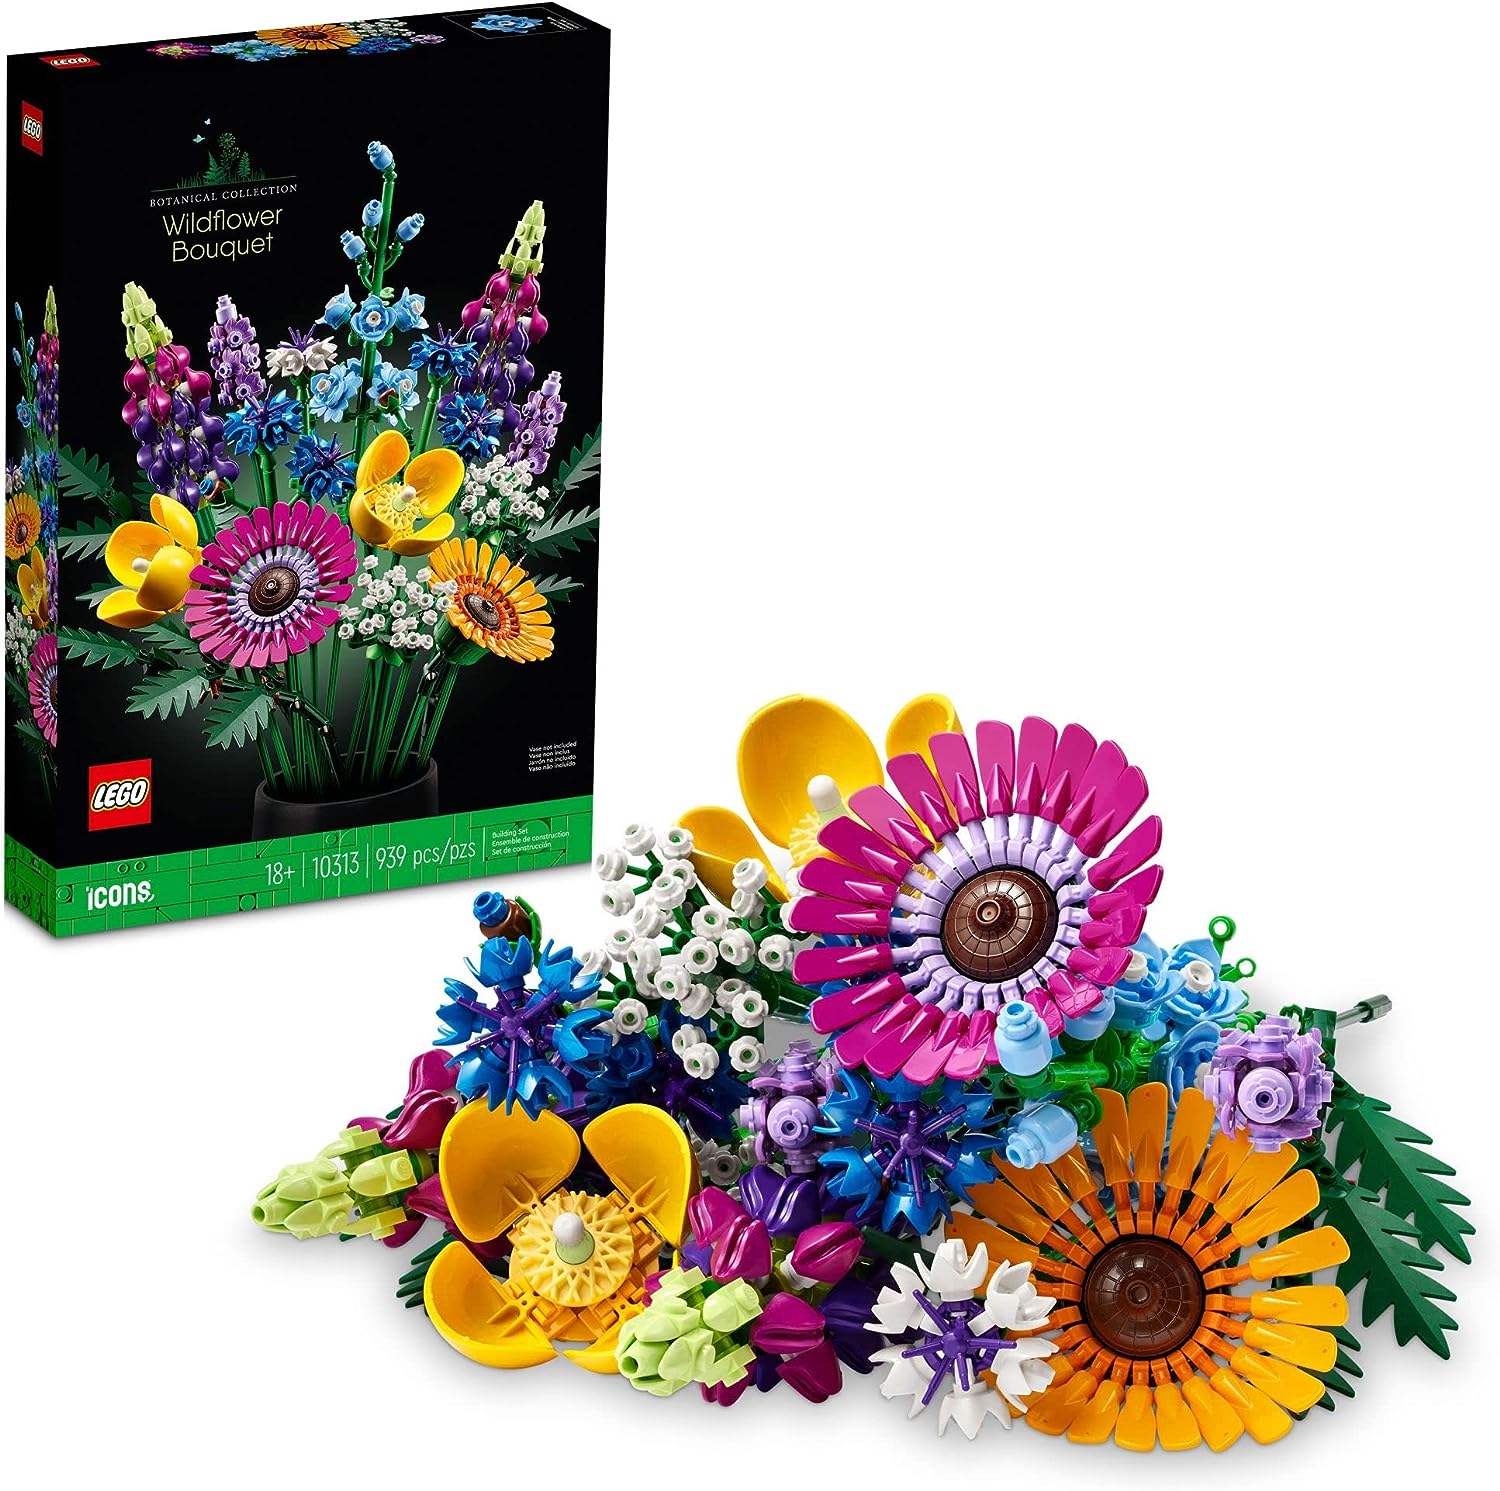 LEGO wildflowers set with box